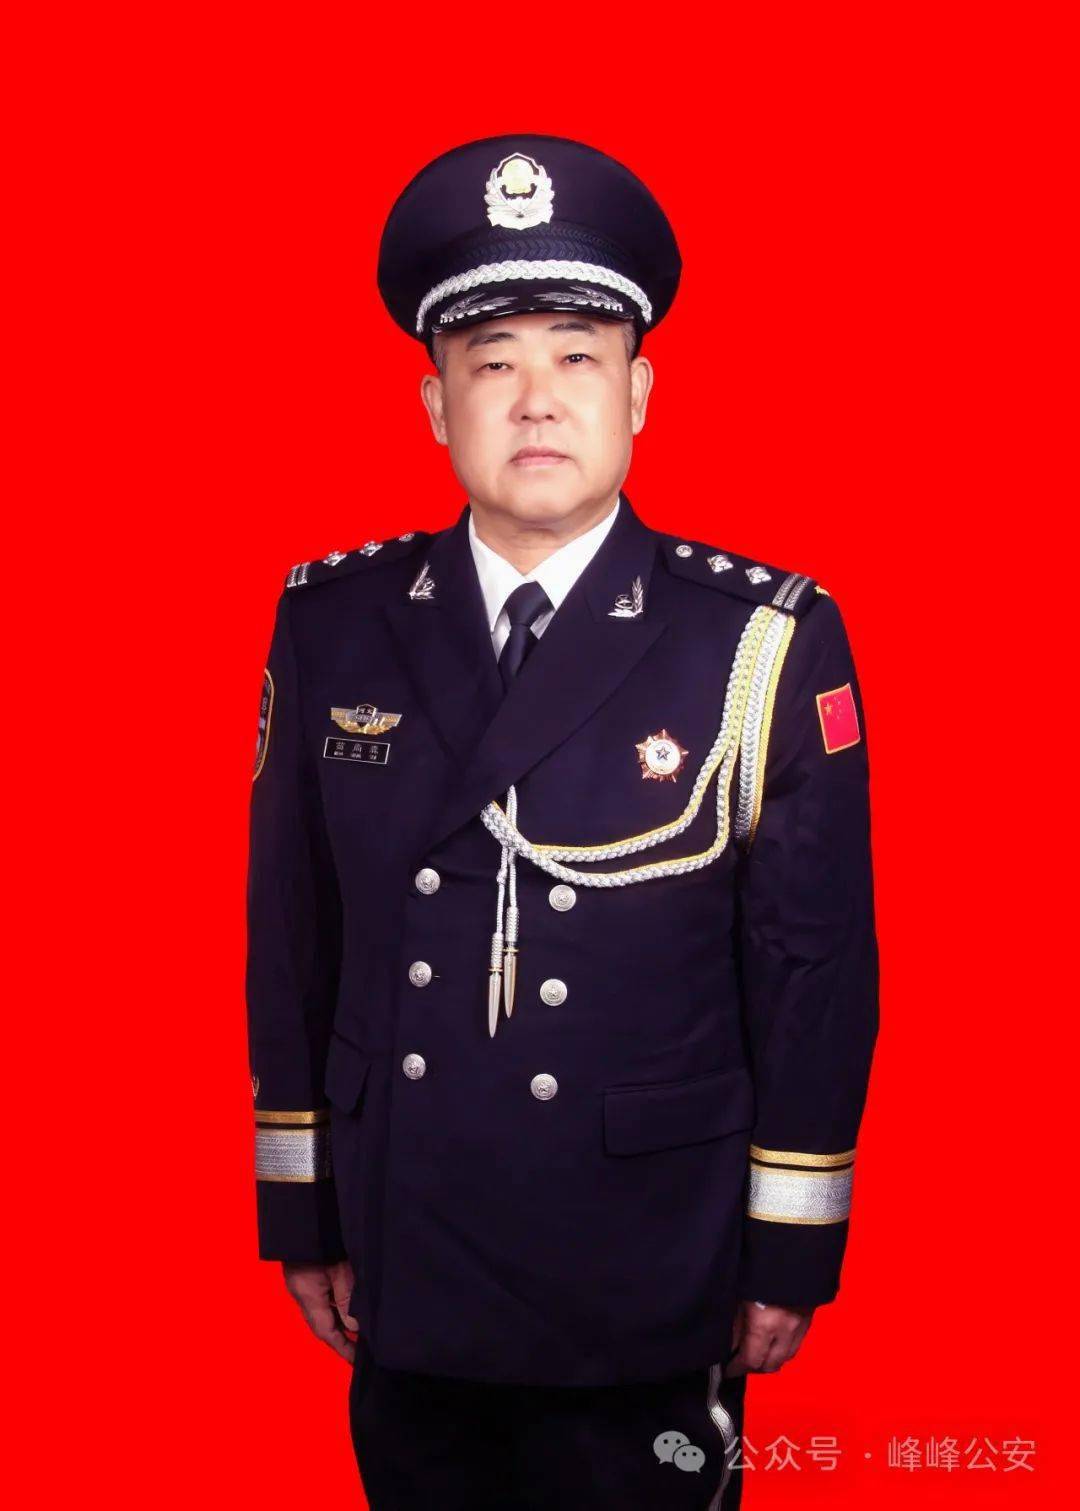 峰峰矿区公安分局为2022年度退休民警拍摄警礼服照片